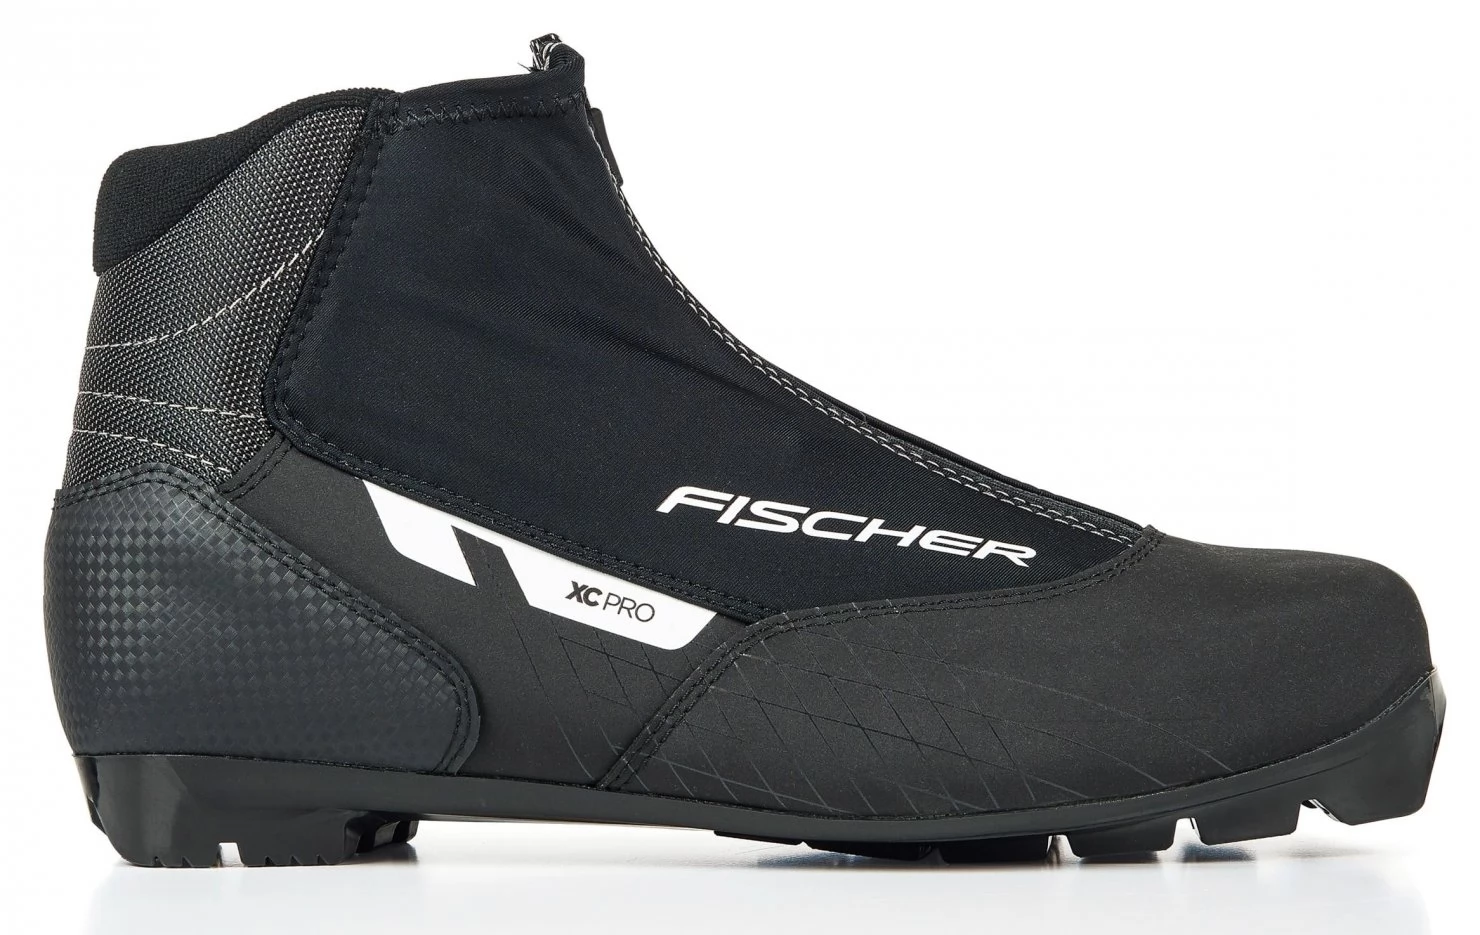 Bežecká obuv Fischer XC Pro Black/white